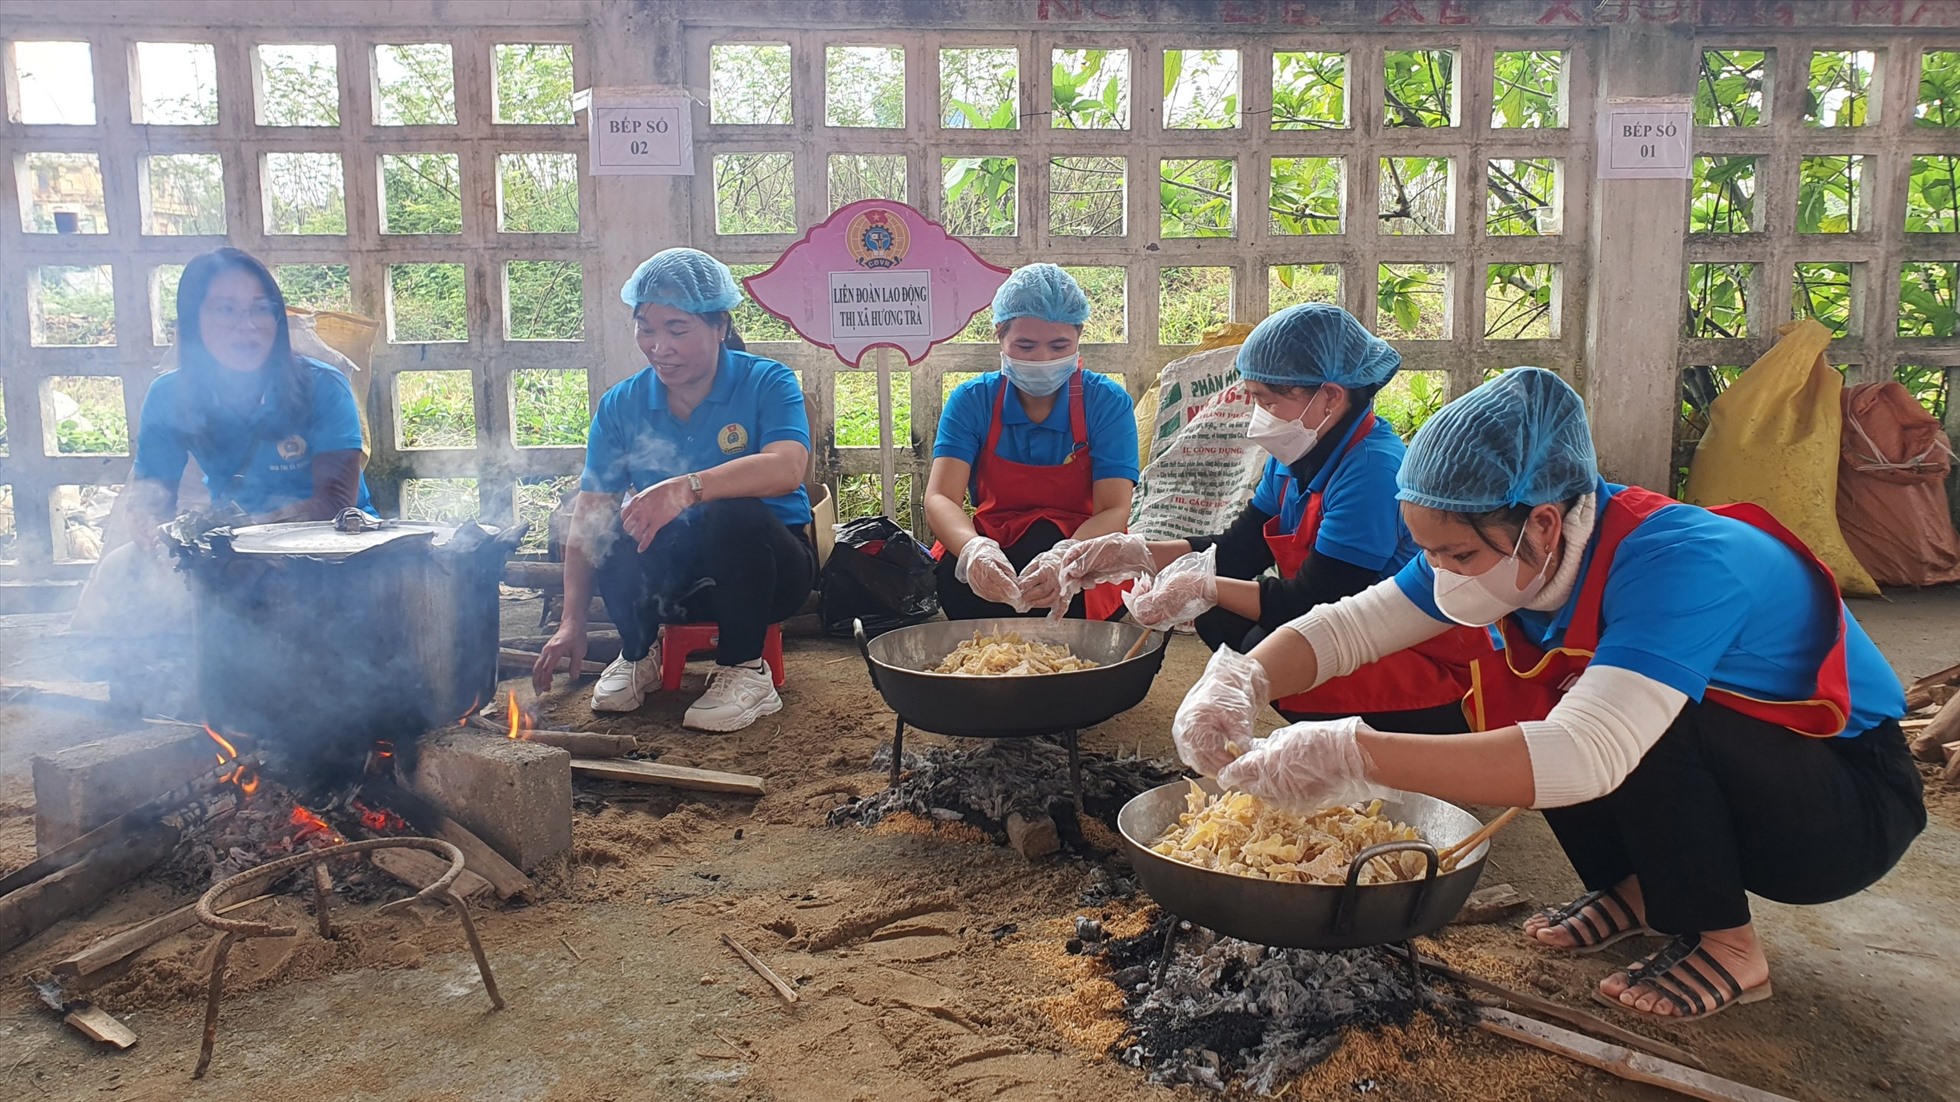 Ngoài ra, tại chương trình “Tết sum vầy - Xuân gắn kết” năm nay, LĐLĐ Thừa Thiên Huế tổ chức cho các cấp công đoàn thi nấu bánh chưng và làm mứt gừng.